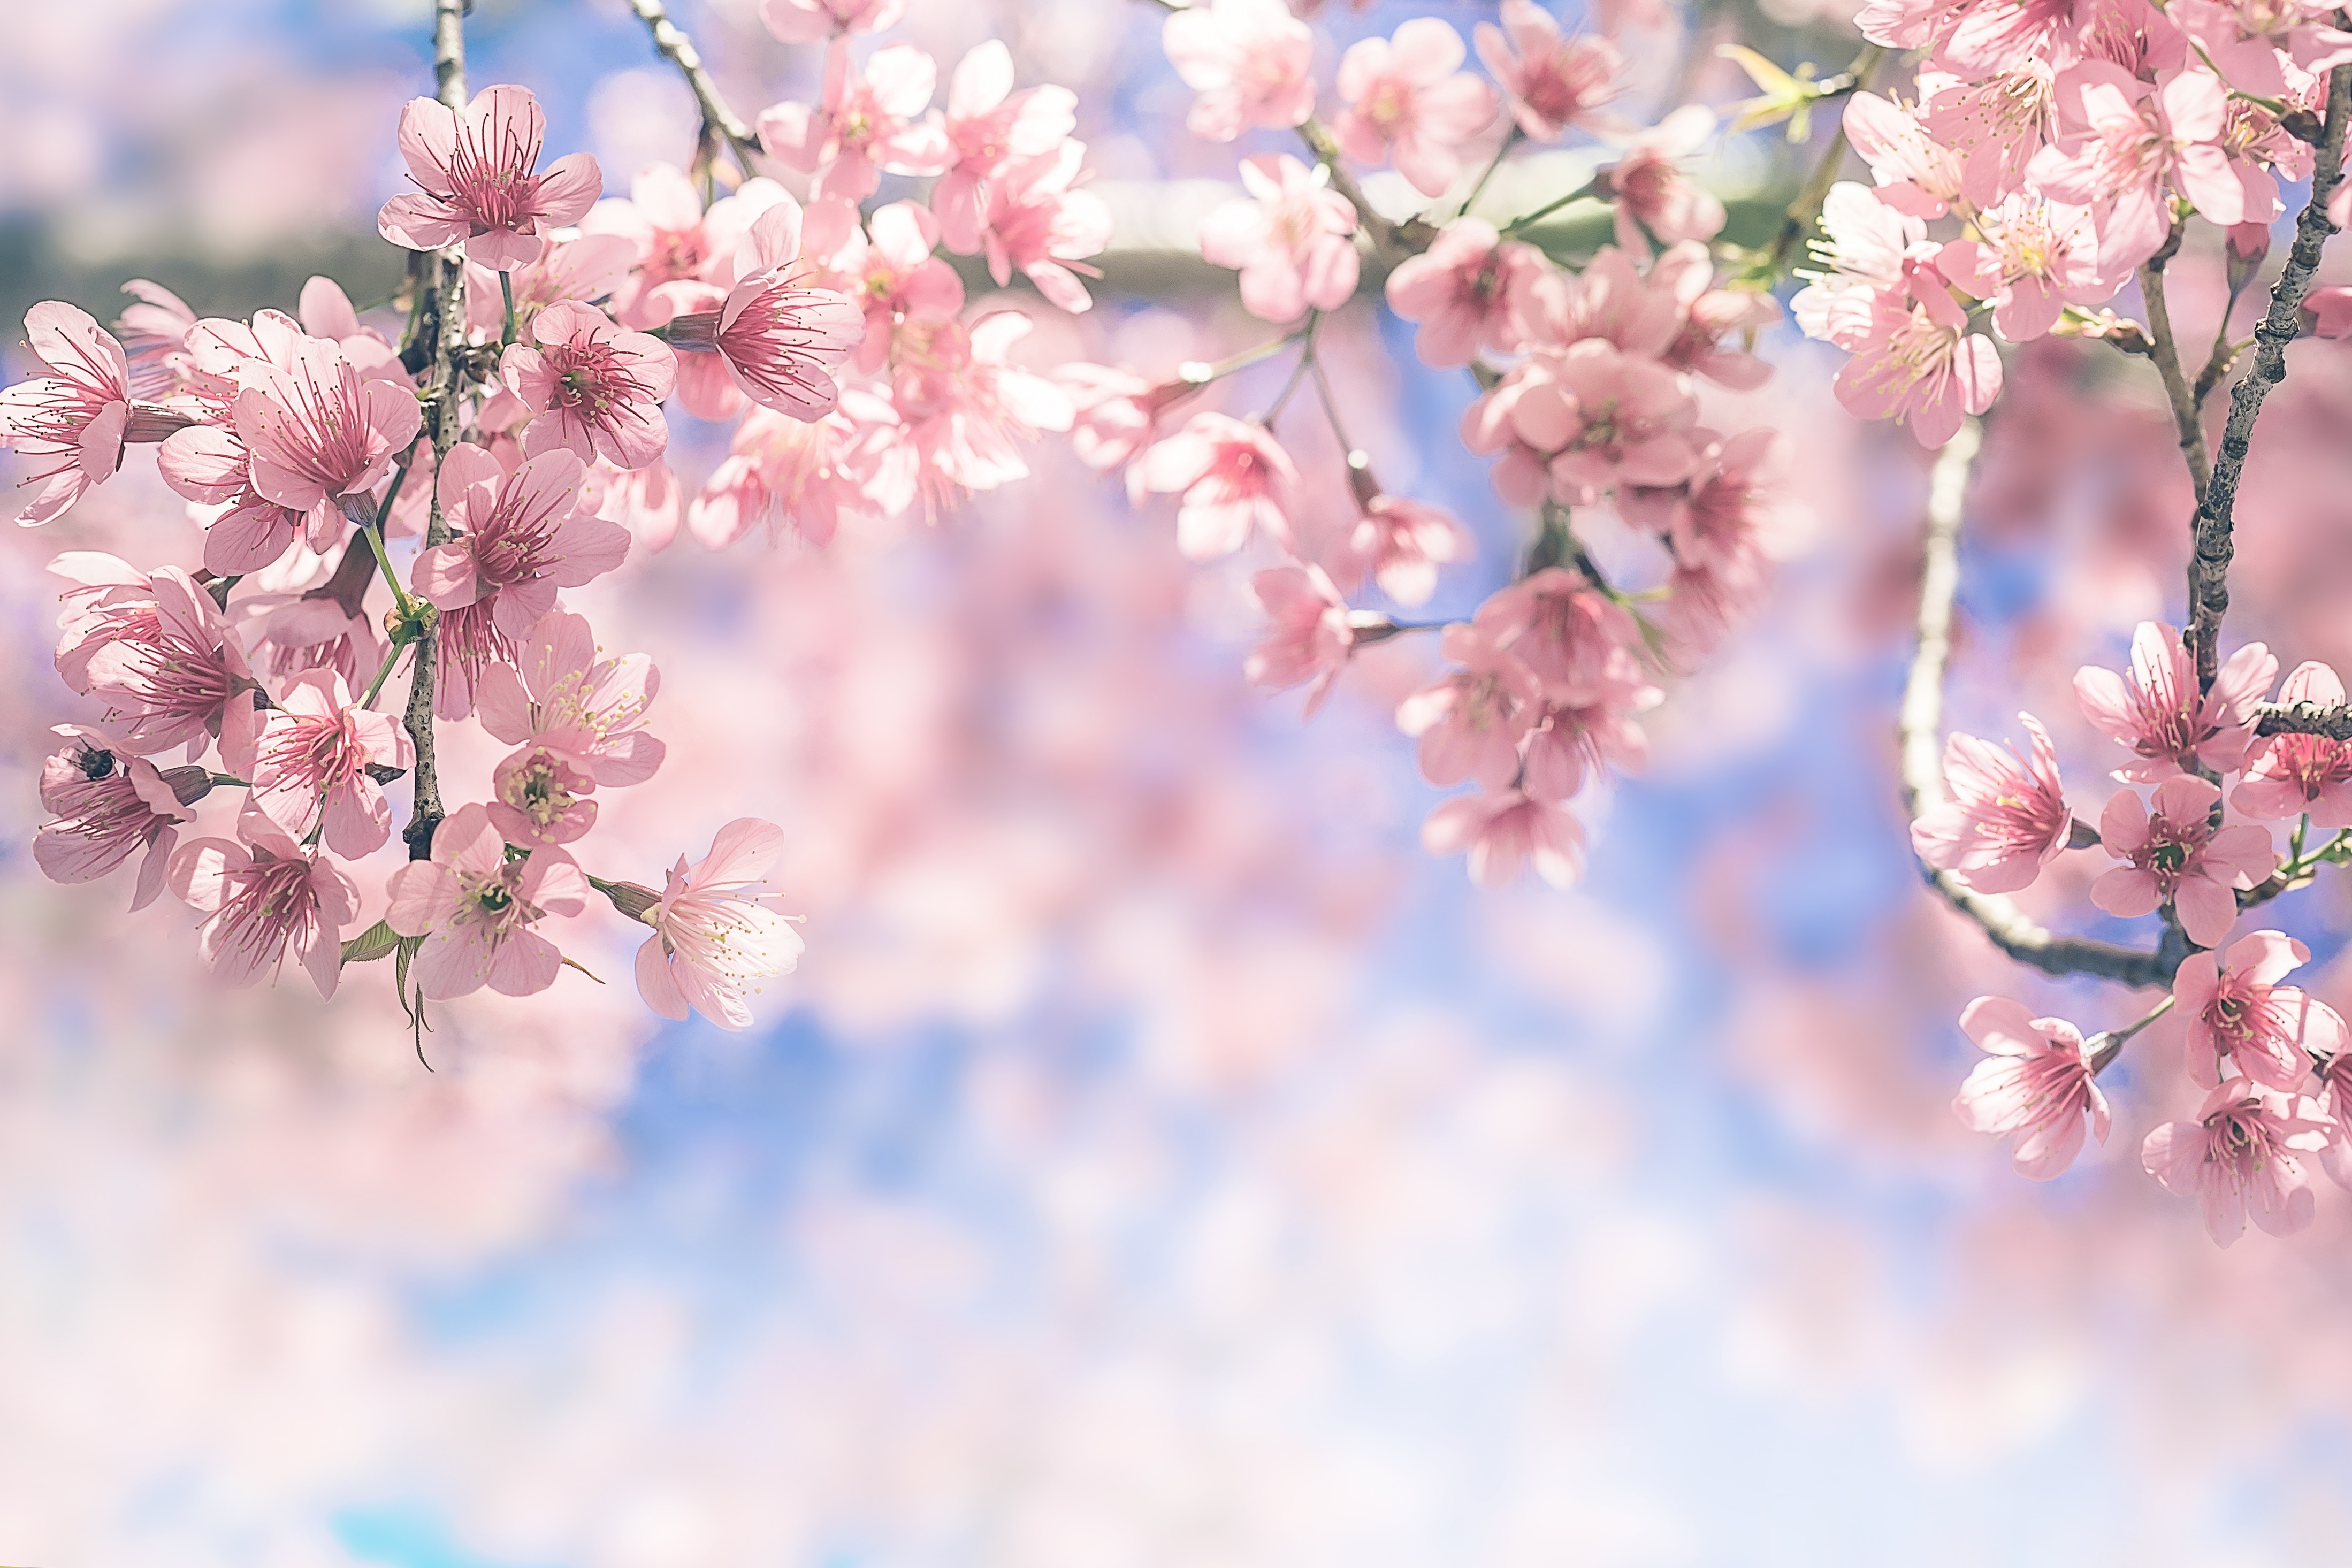 Hoa đào – biểu tượng của vẻ đẹp và sự tinh tế. Những bông hoa đào bắt mắt, với sắc hồng tươi tắn và hương thơm dịu nhẹ, mang đến cảm giác của vẻ đẹp và sự thanh lịch. Hãy trải nghiệm sự tuyệt vời của hoa đào với những bức ảnh đẹp nhất về hoa đào.